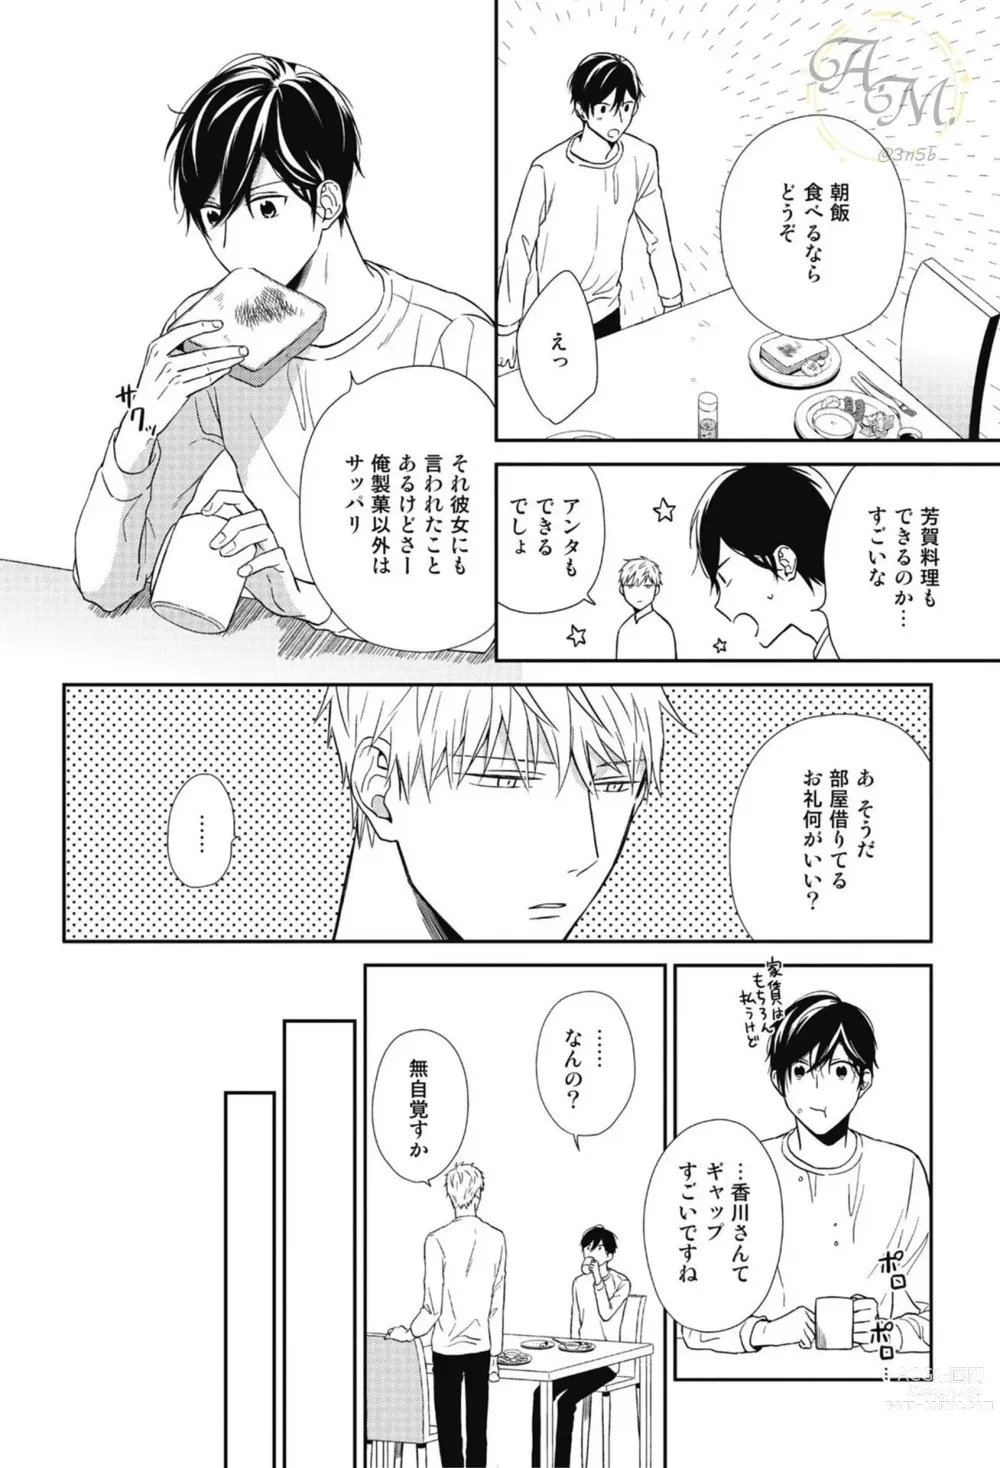 Page 18 of manga SWEET to Yobu ni wa Mada Hayai - Its still early to call a Sweet.